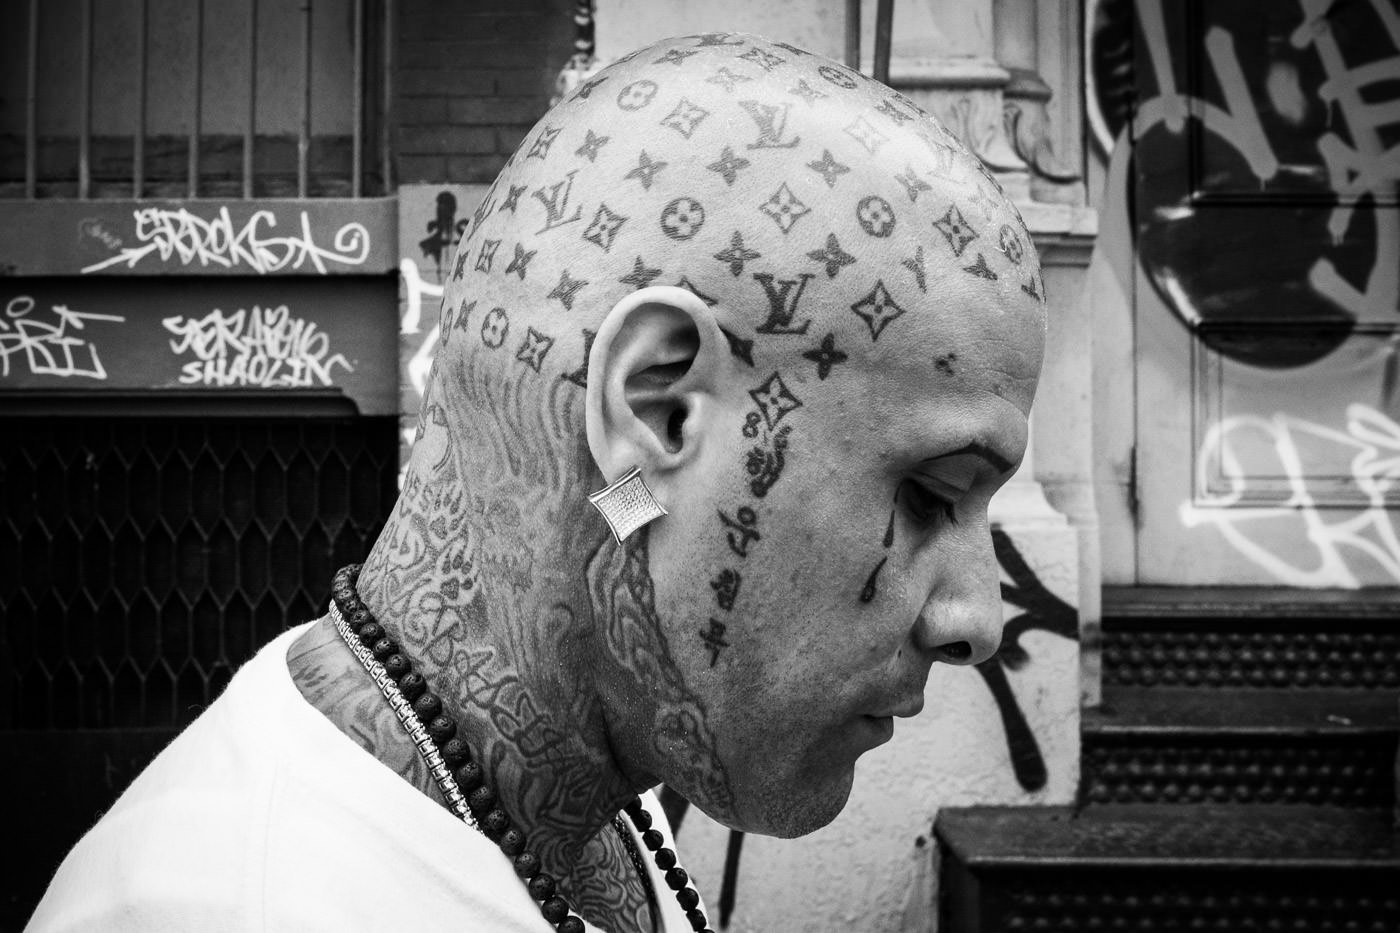 Fotografía callejera: retrato de un hombre de perfil que muestra elaborados tatuajes en la cabeza